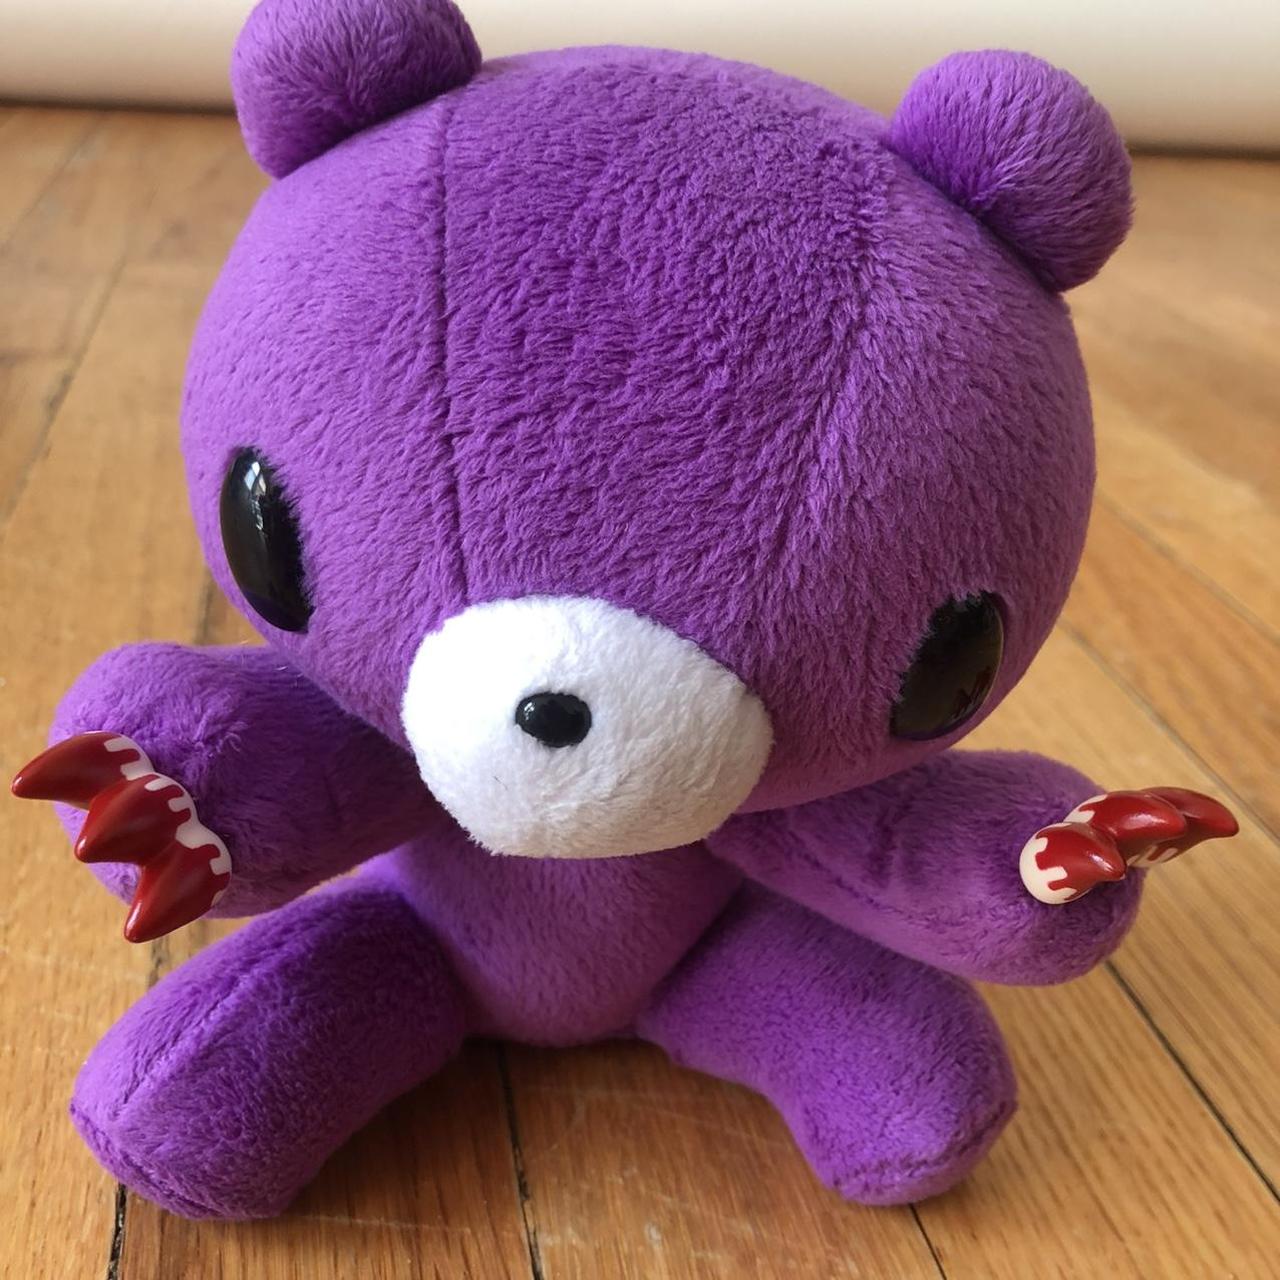 Product Image 2 - Gloomy bear plush 
Purple guy